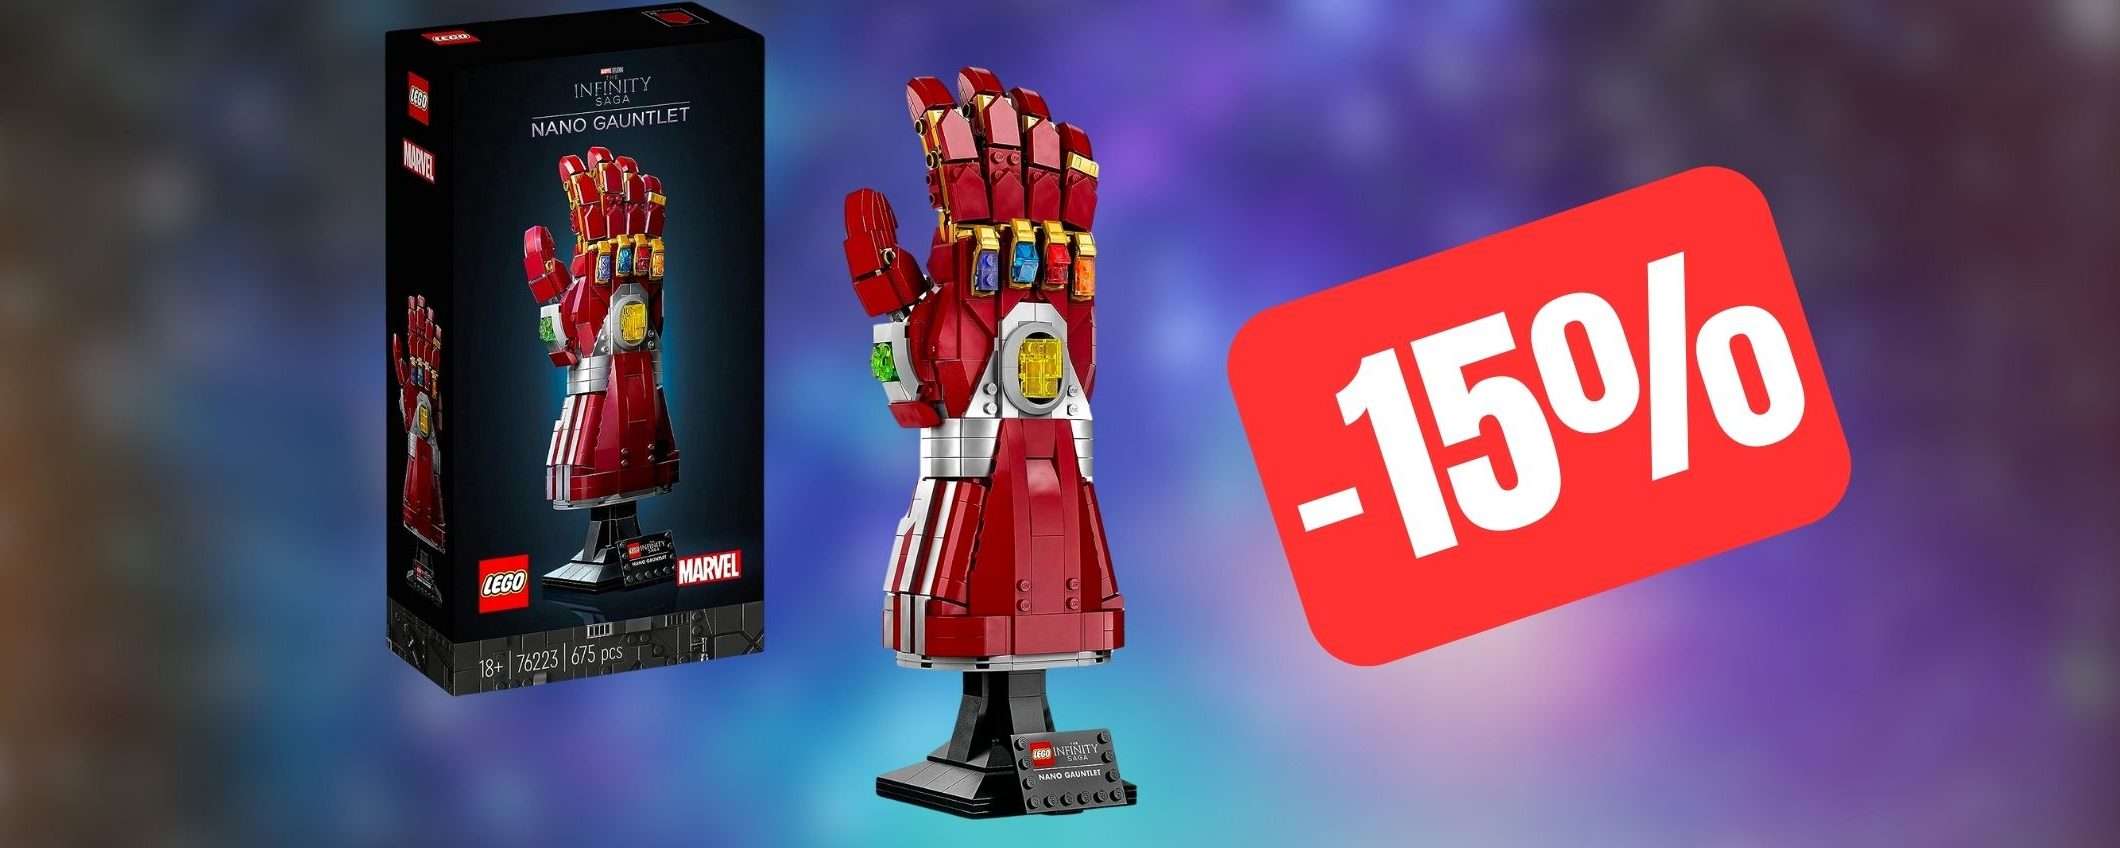 Il LEGO Guanto dell'Infinito Marvel è in OFFERTA Amazon per San Valentino